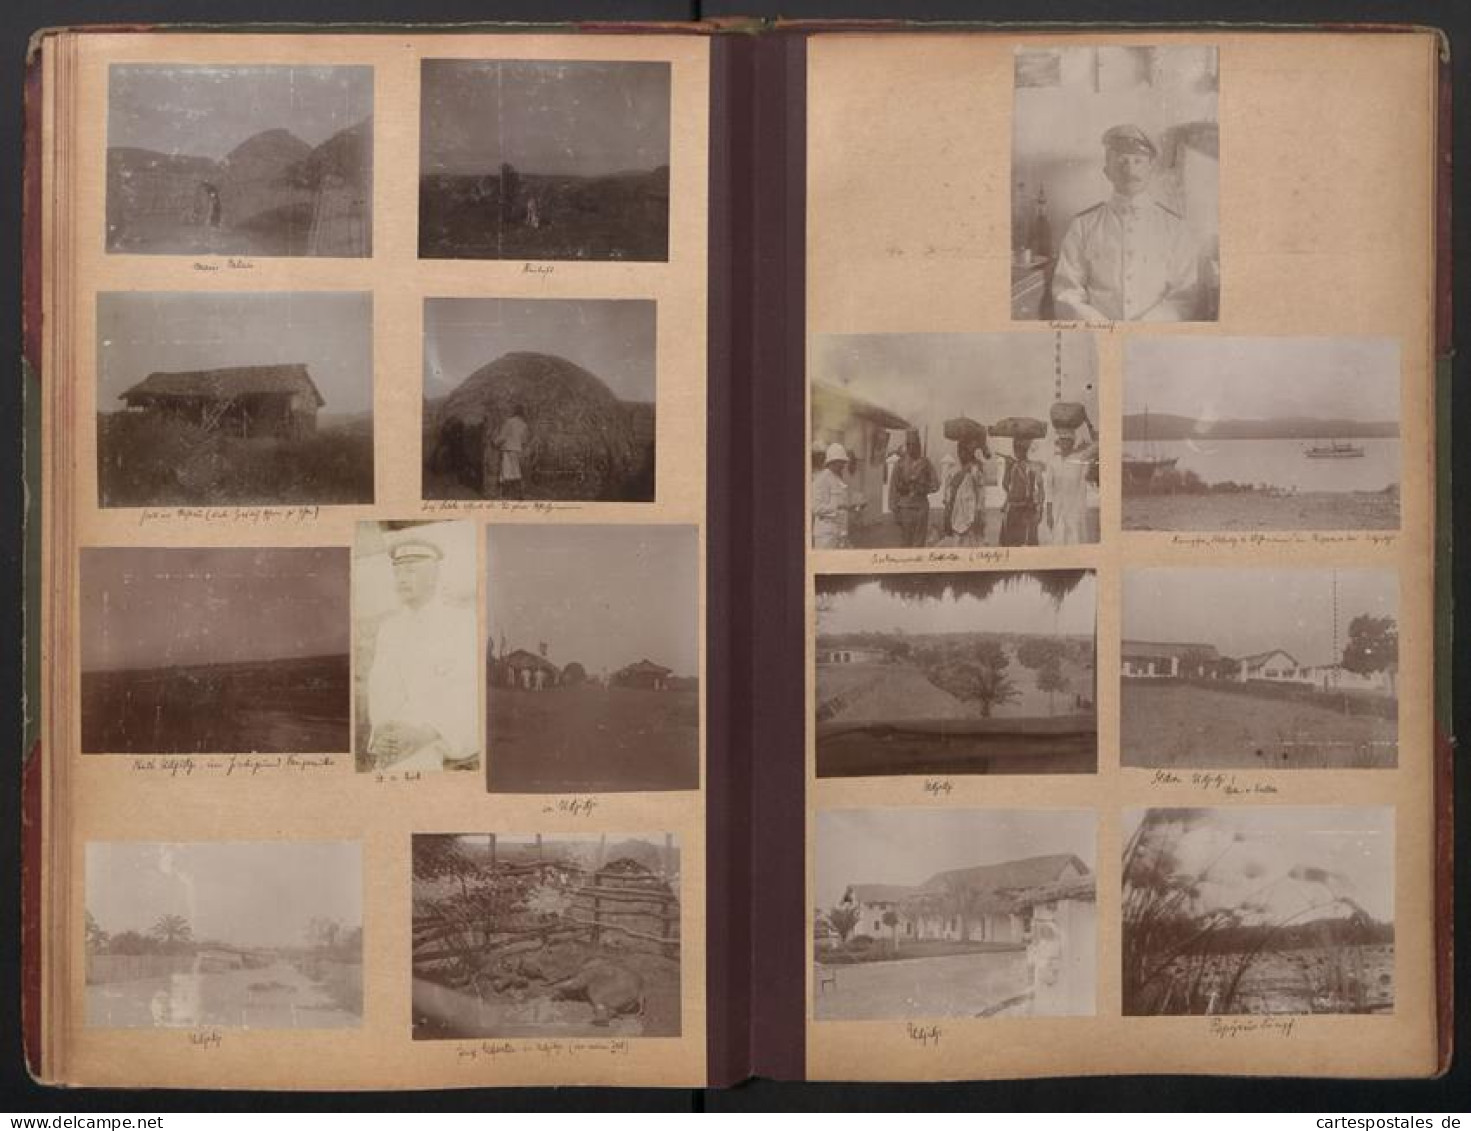 Fotoalbum mit 280 Fotografien, DSWA Schutztruppe, Afrika, Oblt. von Grawert, Hauptmann von Fiedler, Zanzibar, Durban 